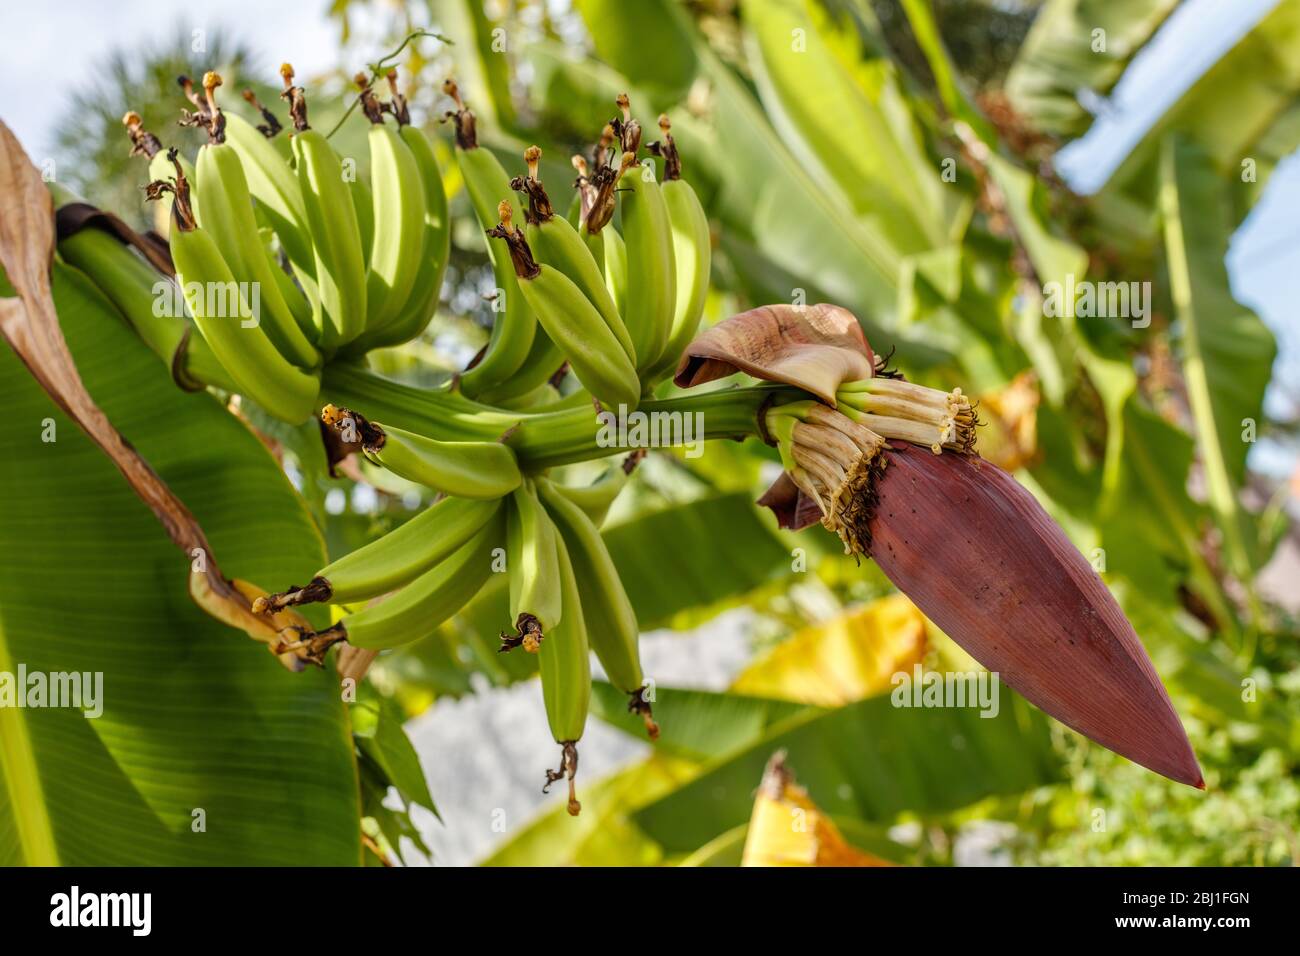 Mazzo di banana verde matura sull'albero e l'infiorescenza di banana (fiore). Bali, Indonesia. Foto Stock